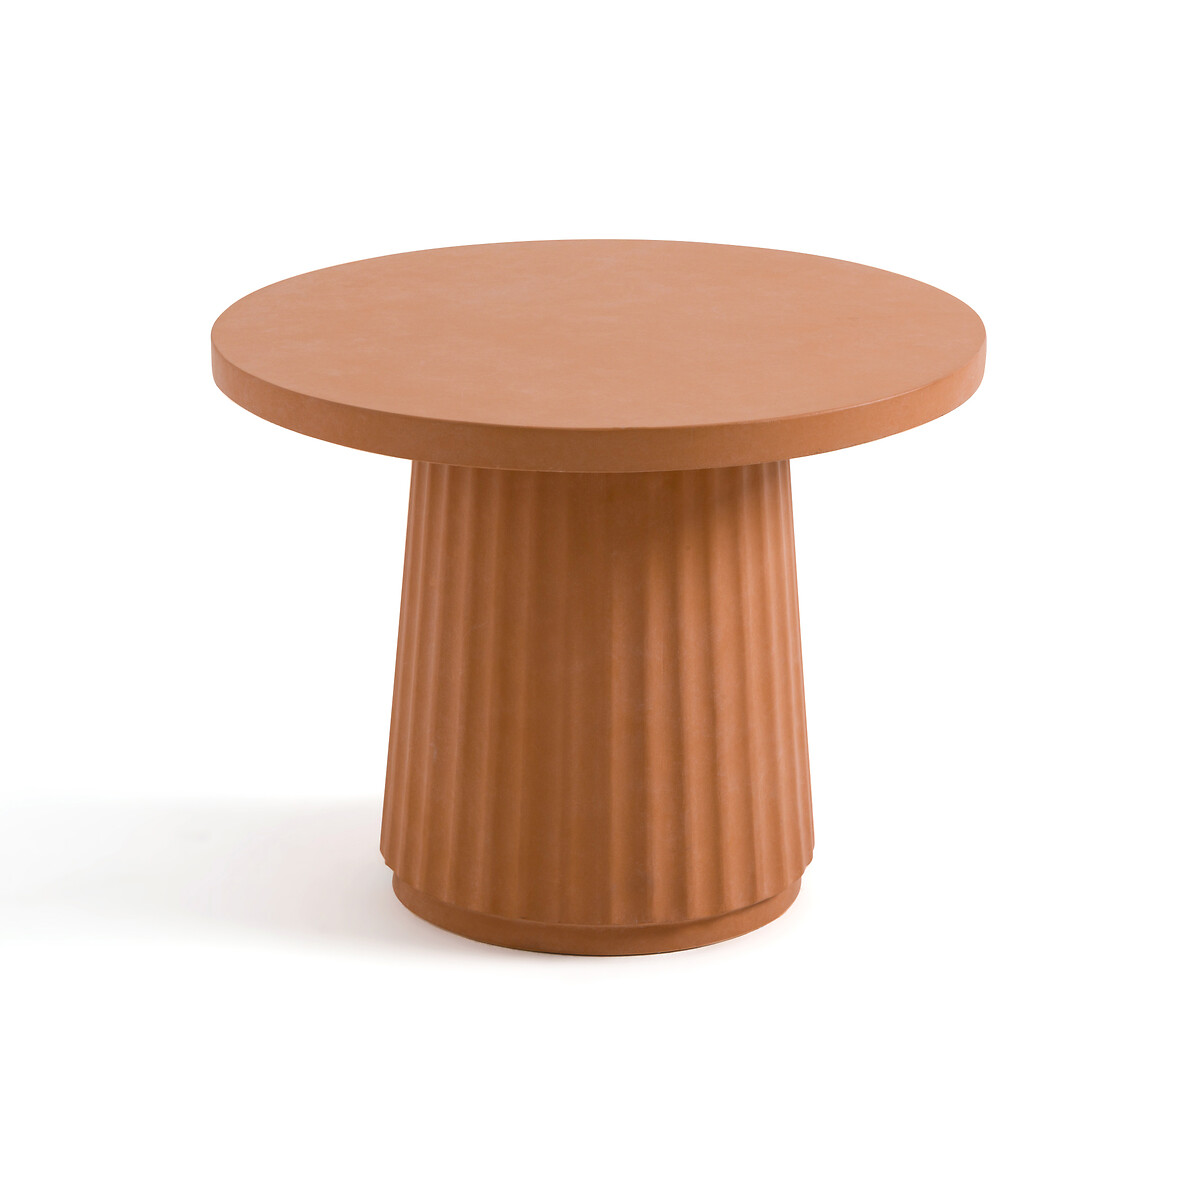 Стол журнальный из цементного волокна Cannelli единый размер оранжевый стол журнальный из цементного волокна cannelli единый размер оранжевый